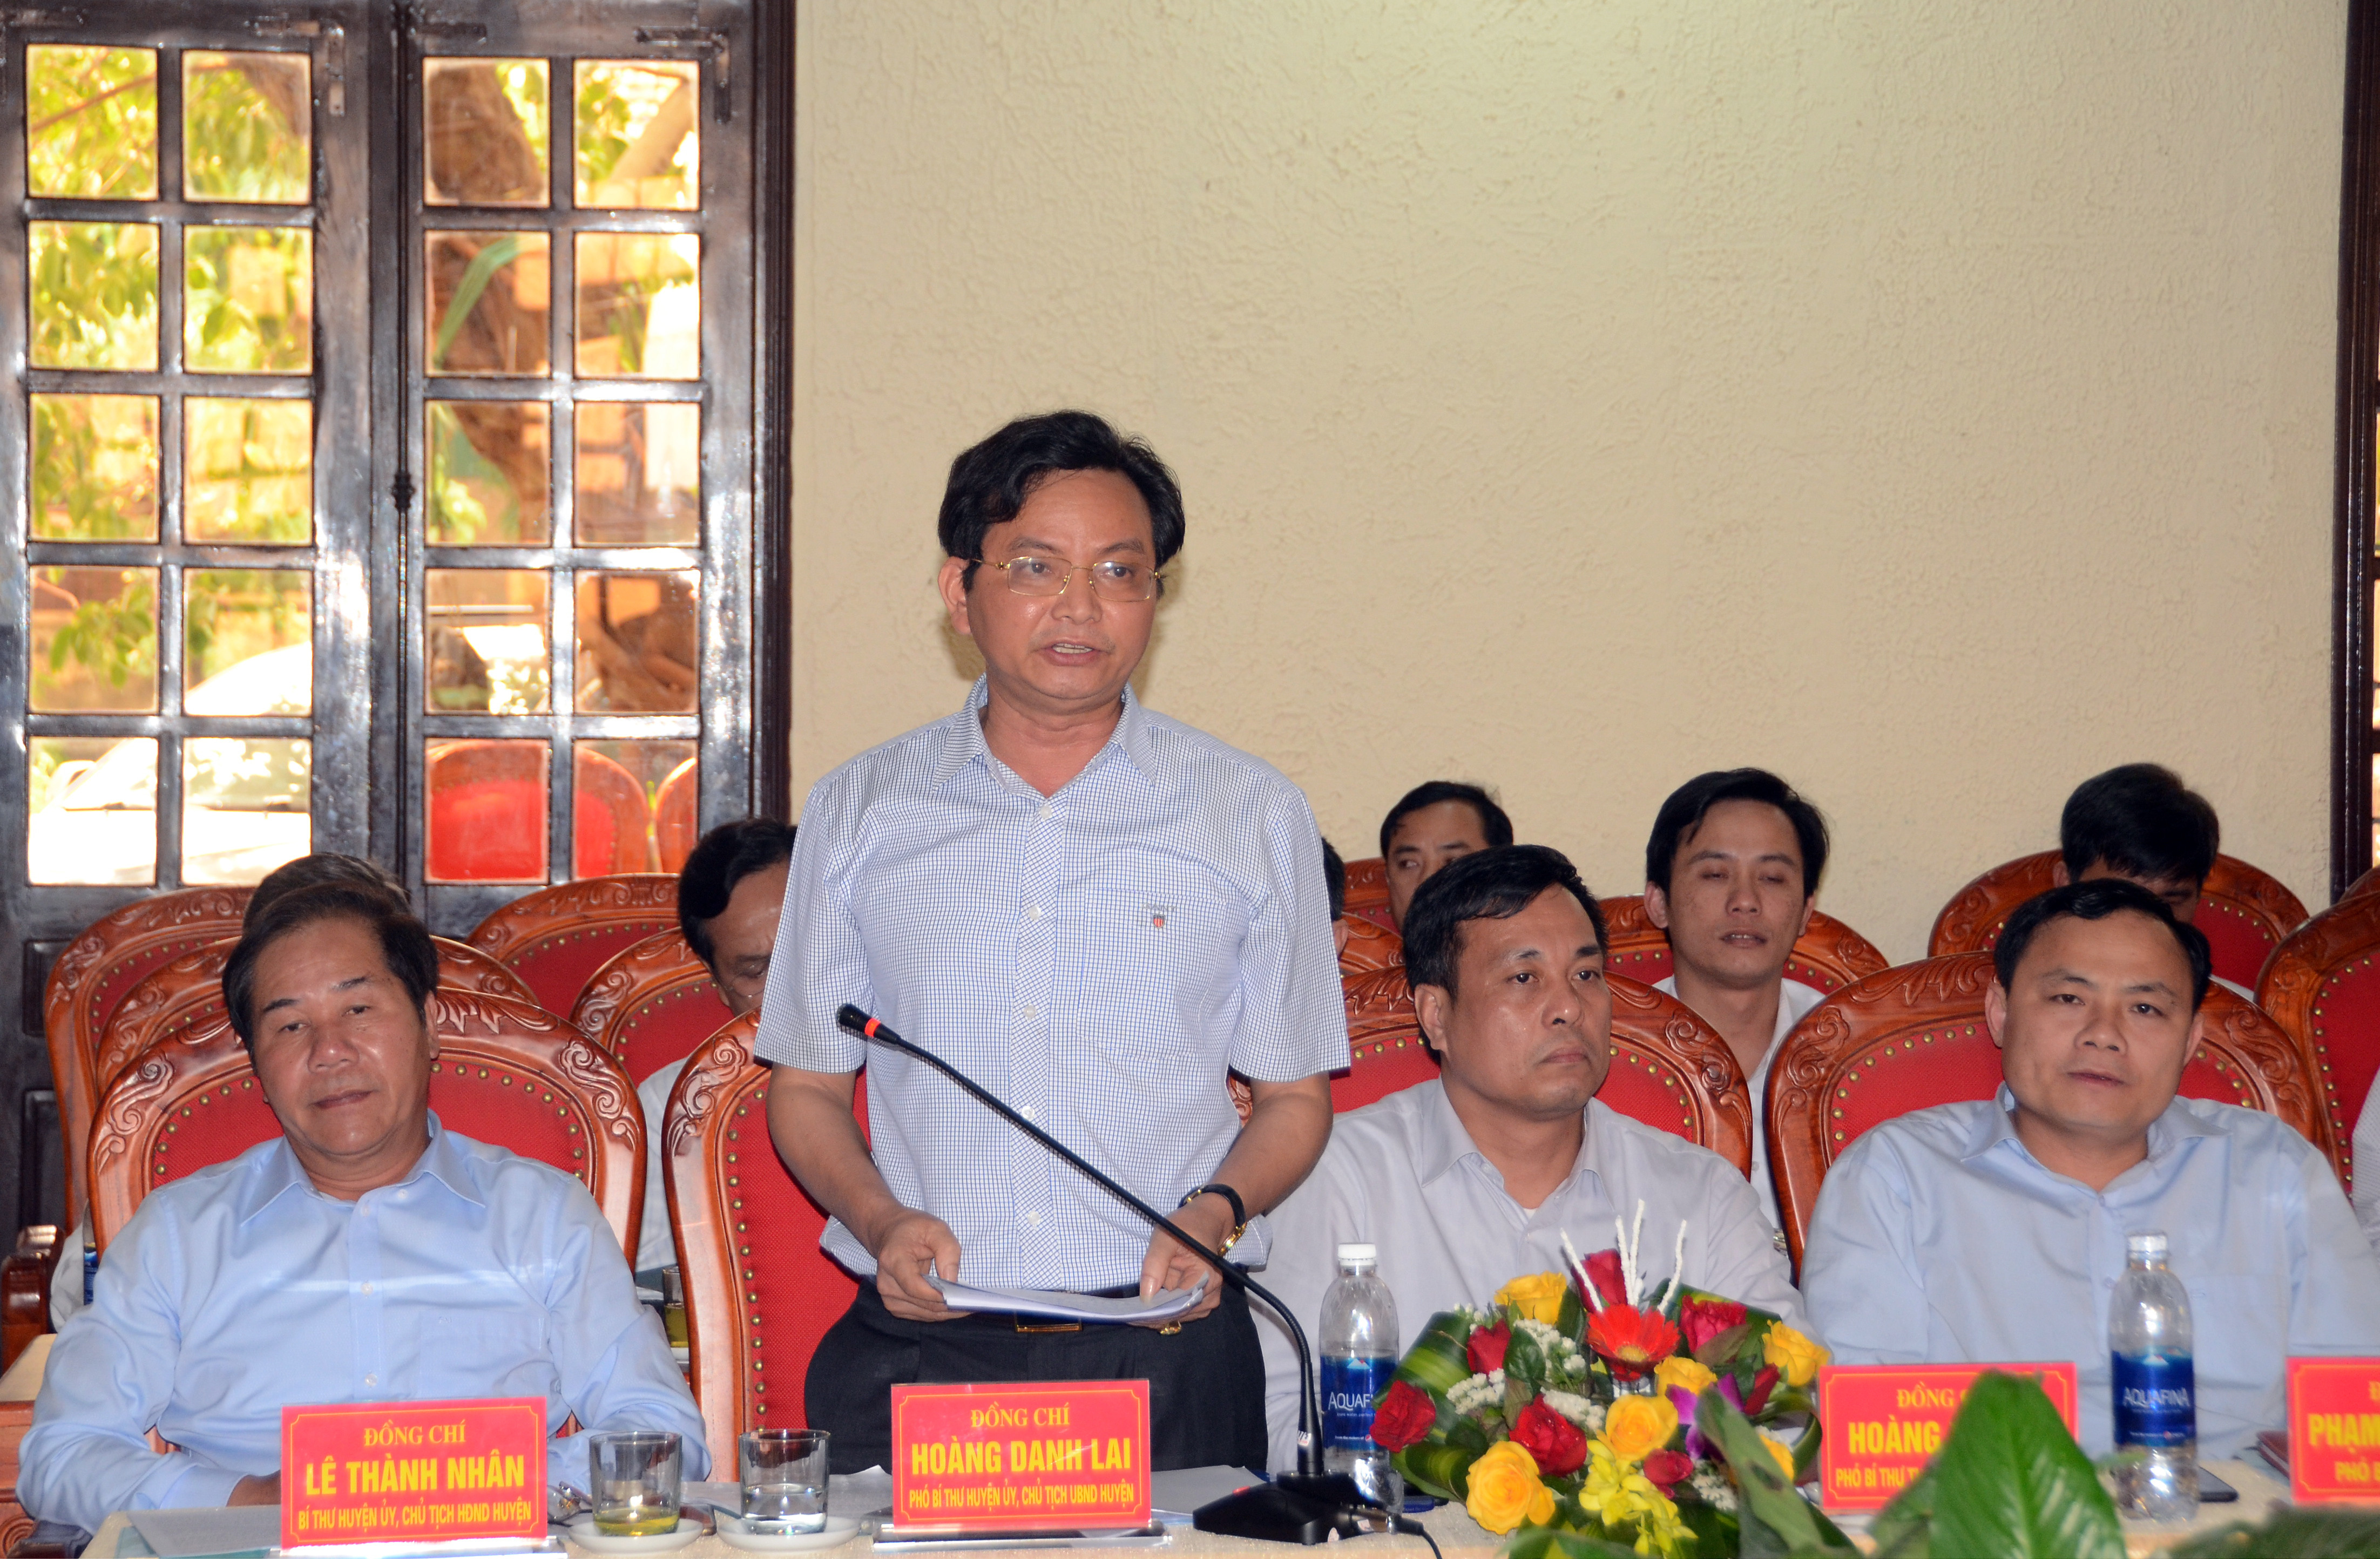  Đồng chí Hoàng Danh Lai, Chủ tịch UBND huyện Quỳnh Lưu báo cáo tình hình kinh tế-xã hội  của địa phương